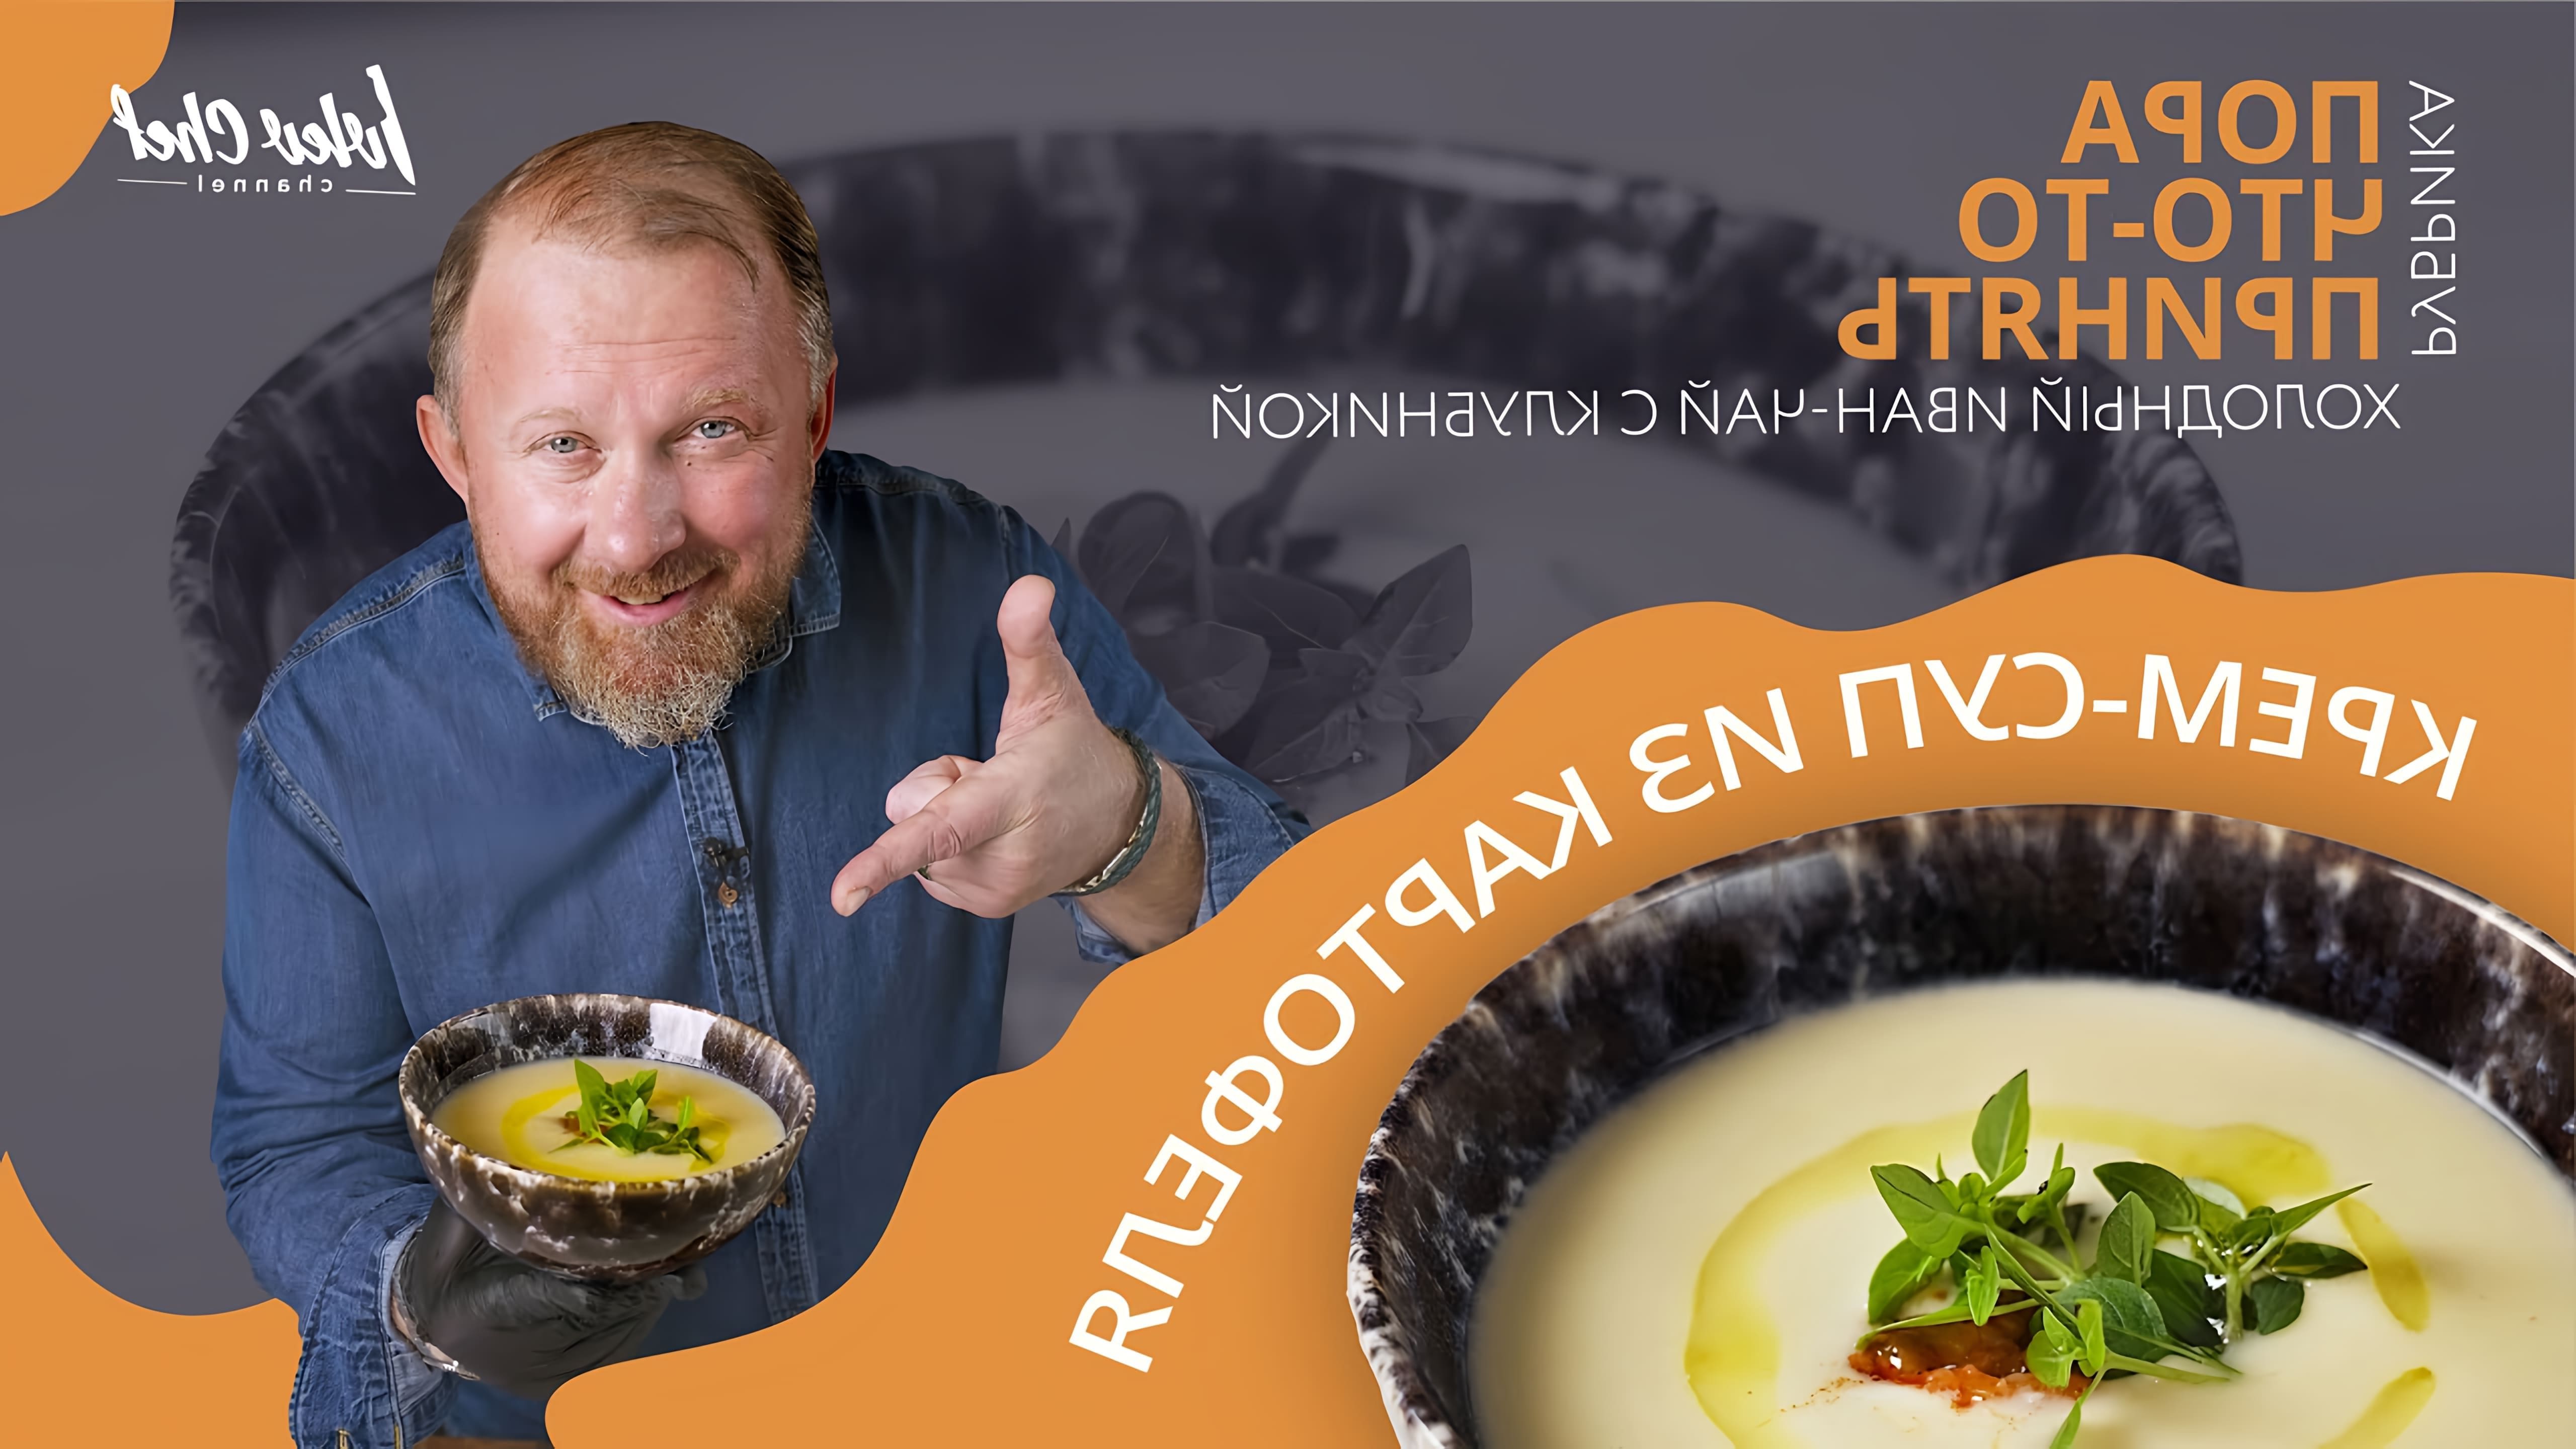 В этом видео Константин Ивлев показывает, как приготовить крем-суп из картофеля и холодный иван-чай с клубникой